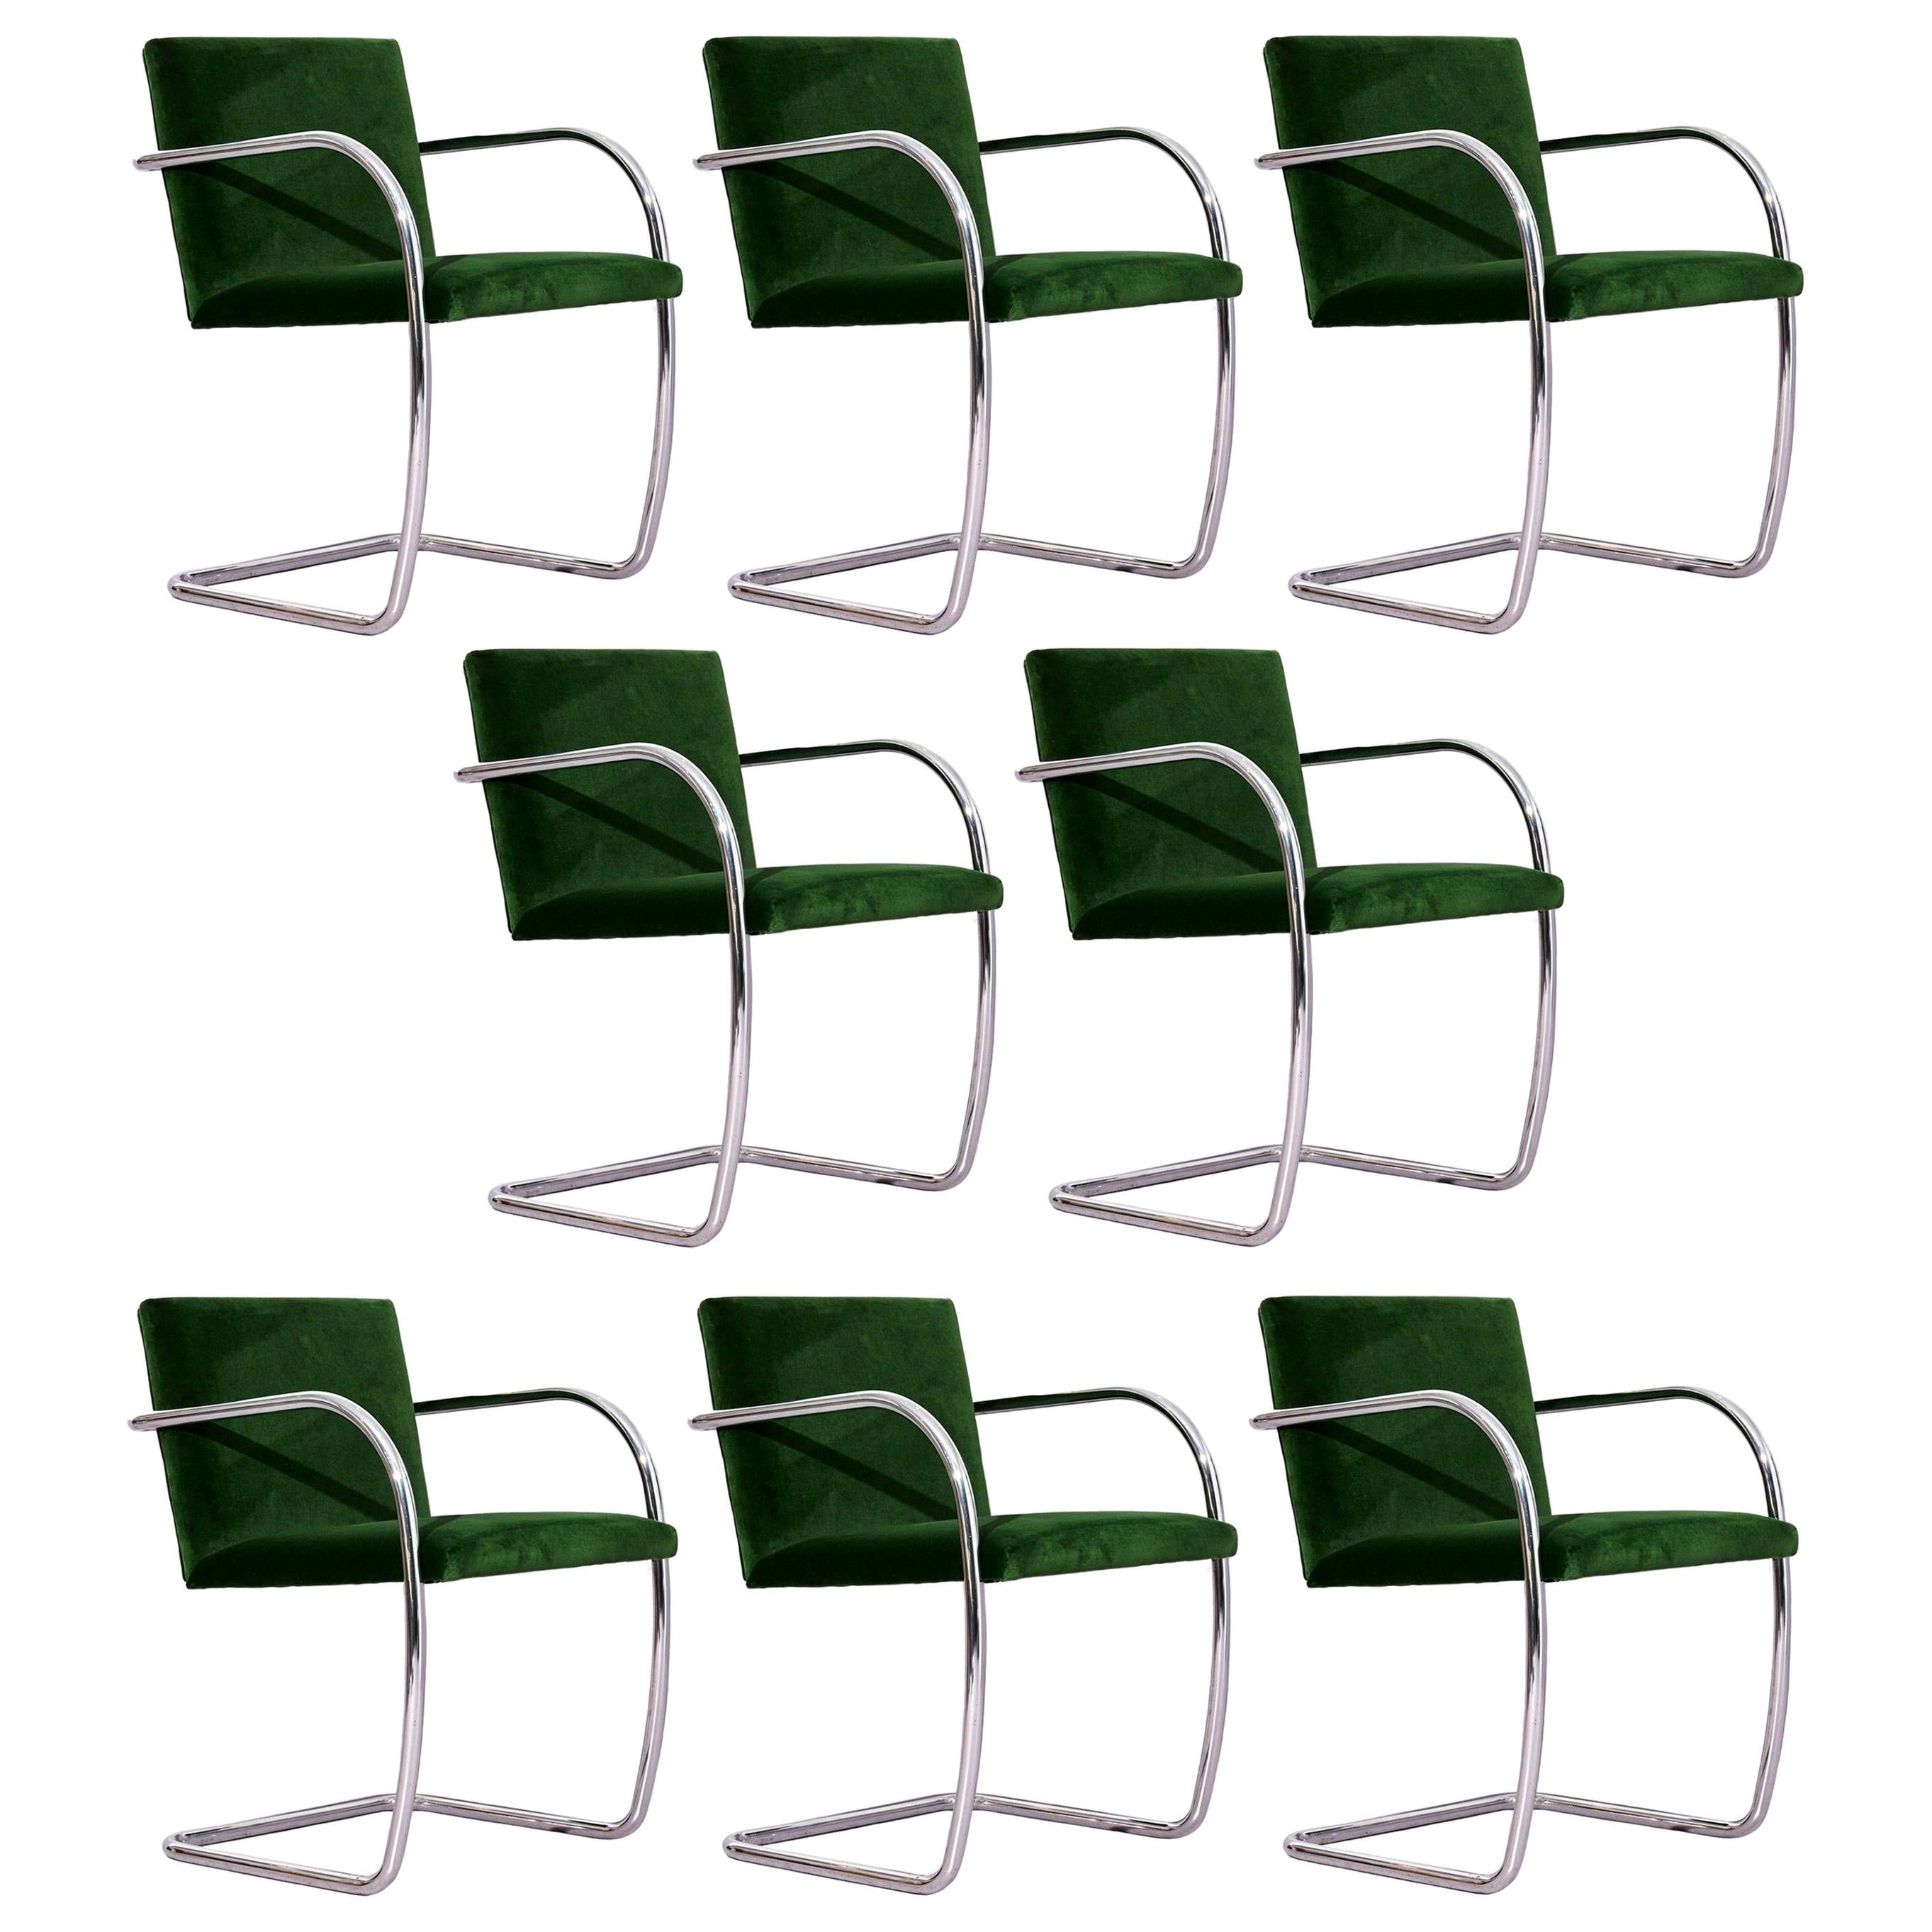 Huit chaises tubulaires Brno chromées Mies van der Rohe par Knoll en velours vert